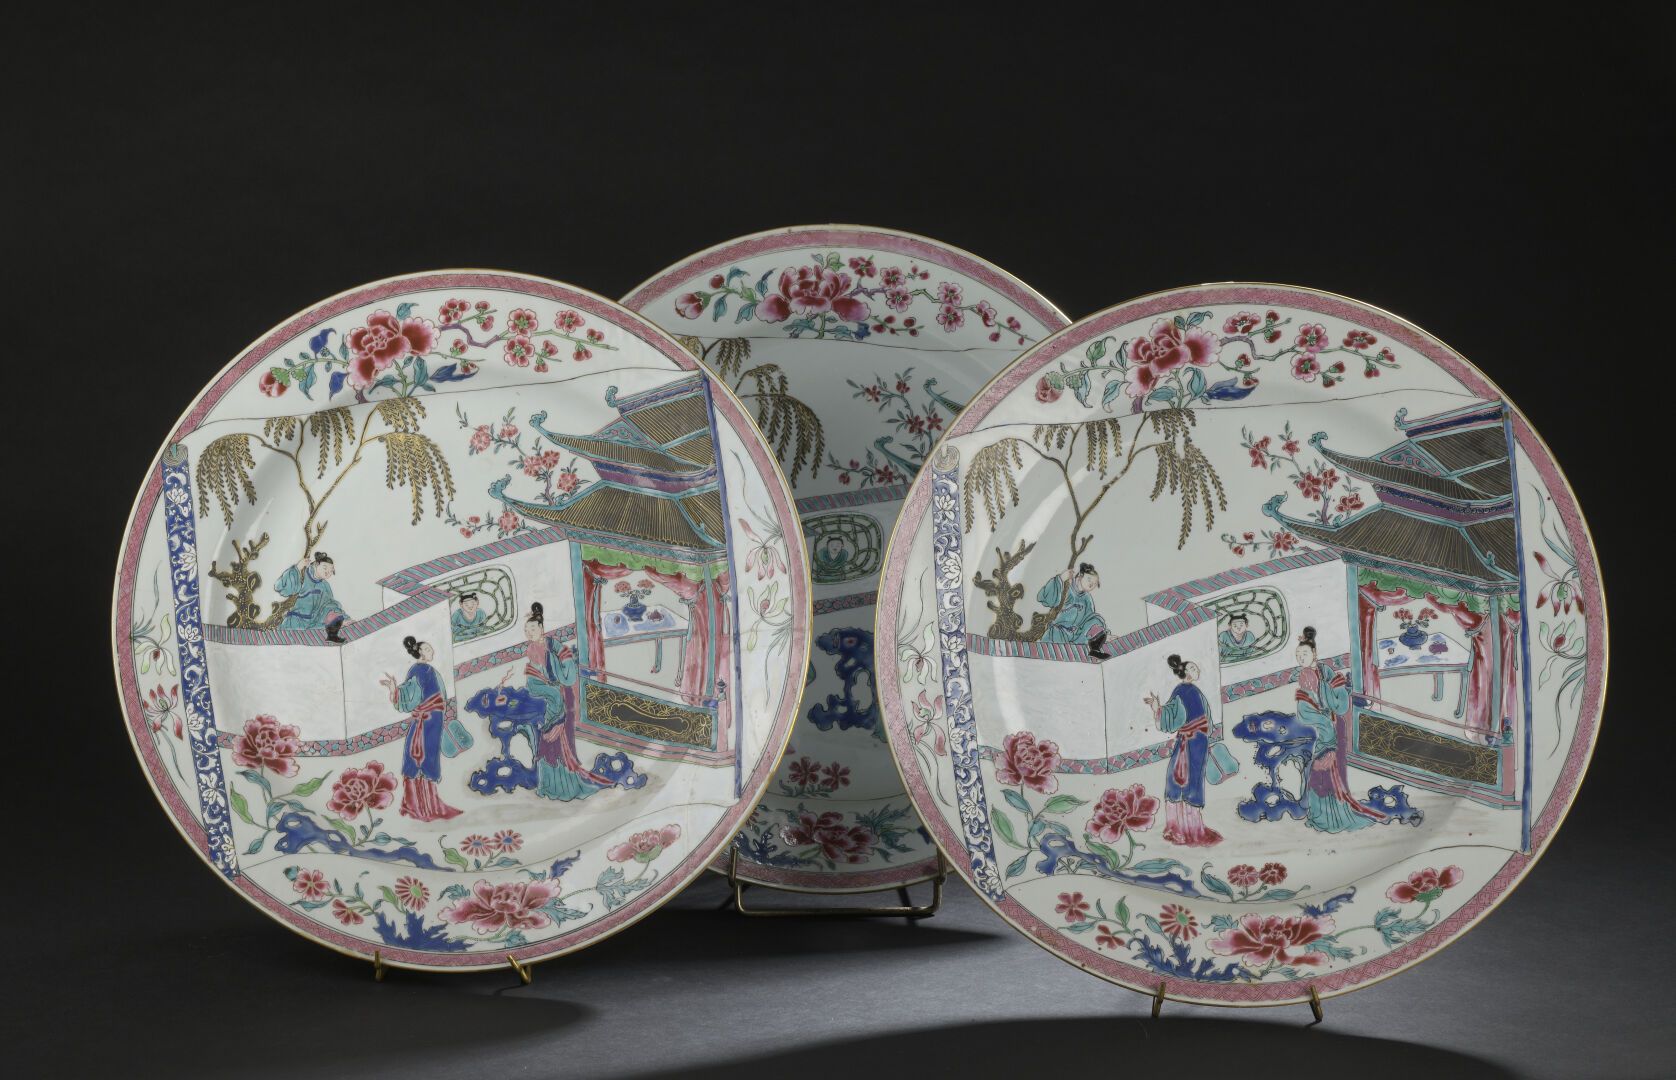 Null 三件大型粉彩瓷盘
中国，雍正时期 (1723-1735)
装饰有元代王实甫的《西厢记》场景，描绘了崔莺莺和她的侍女在等待张生的到来，边缘装饰有牡丹、梅&hellip;